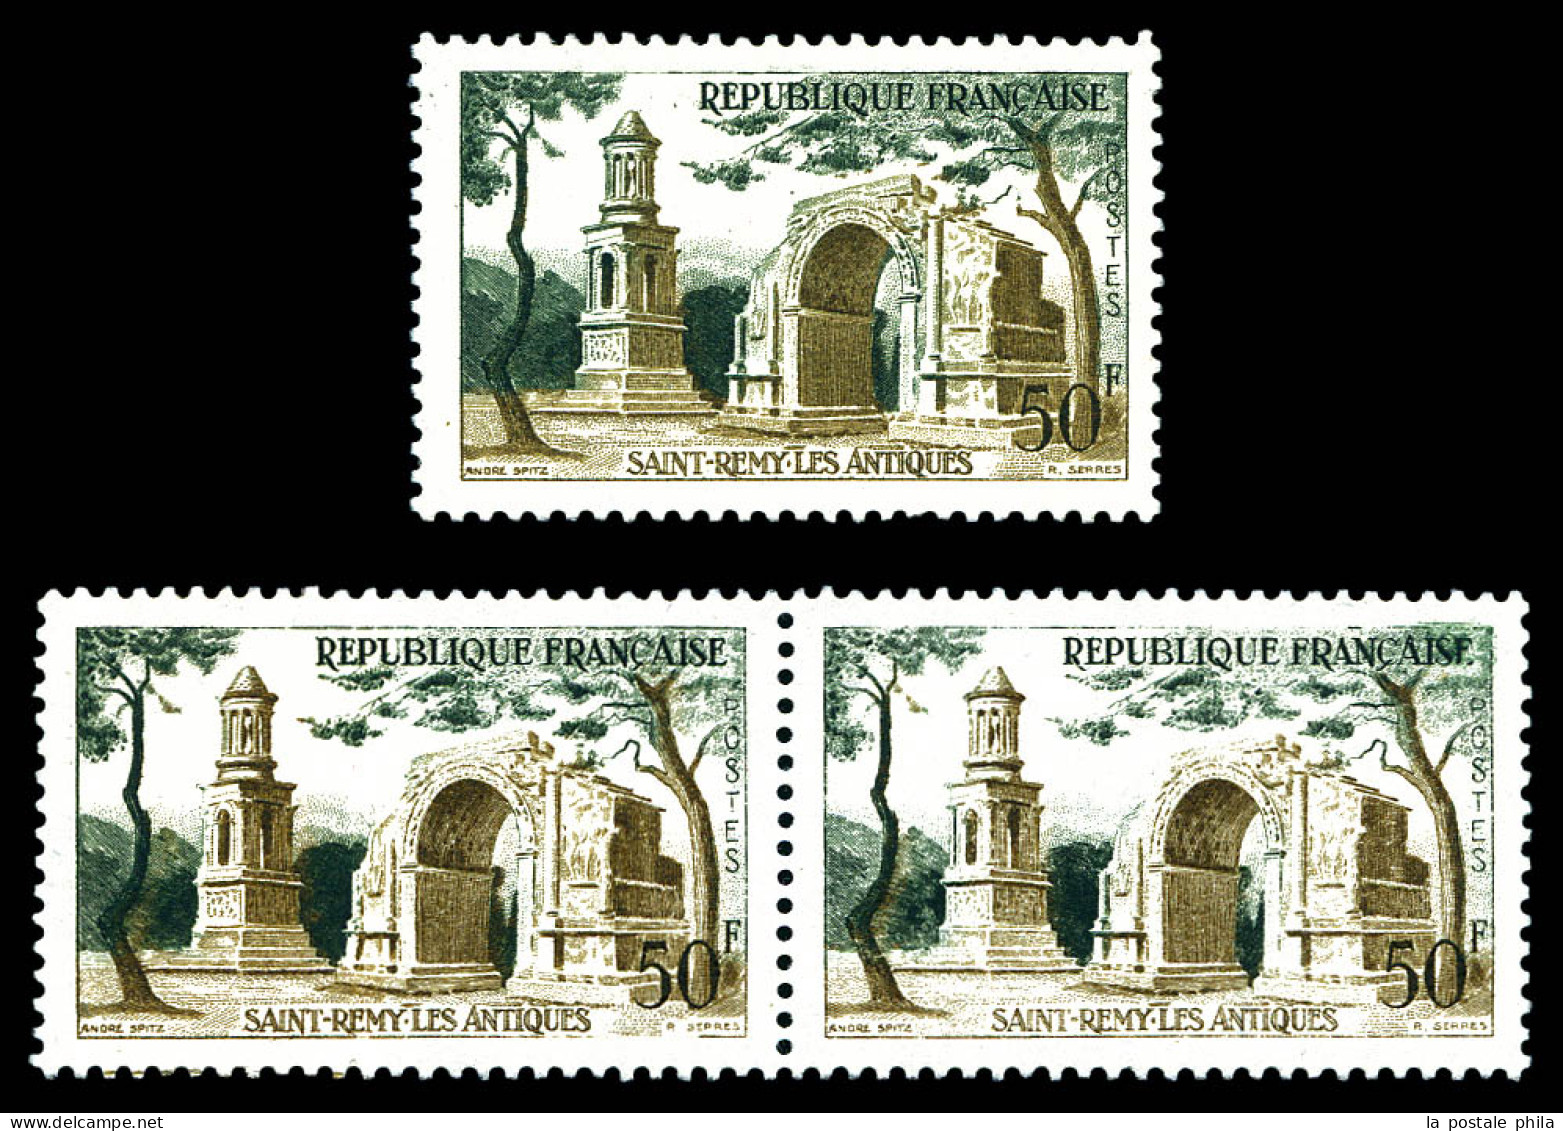 N°1130b, 50f St Rémy Les Antiques: Impression Sur Raccord En Paire + Arche Verte. SUP. R. (signé Brun/certificat)  Quali - Nuevos